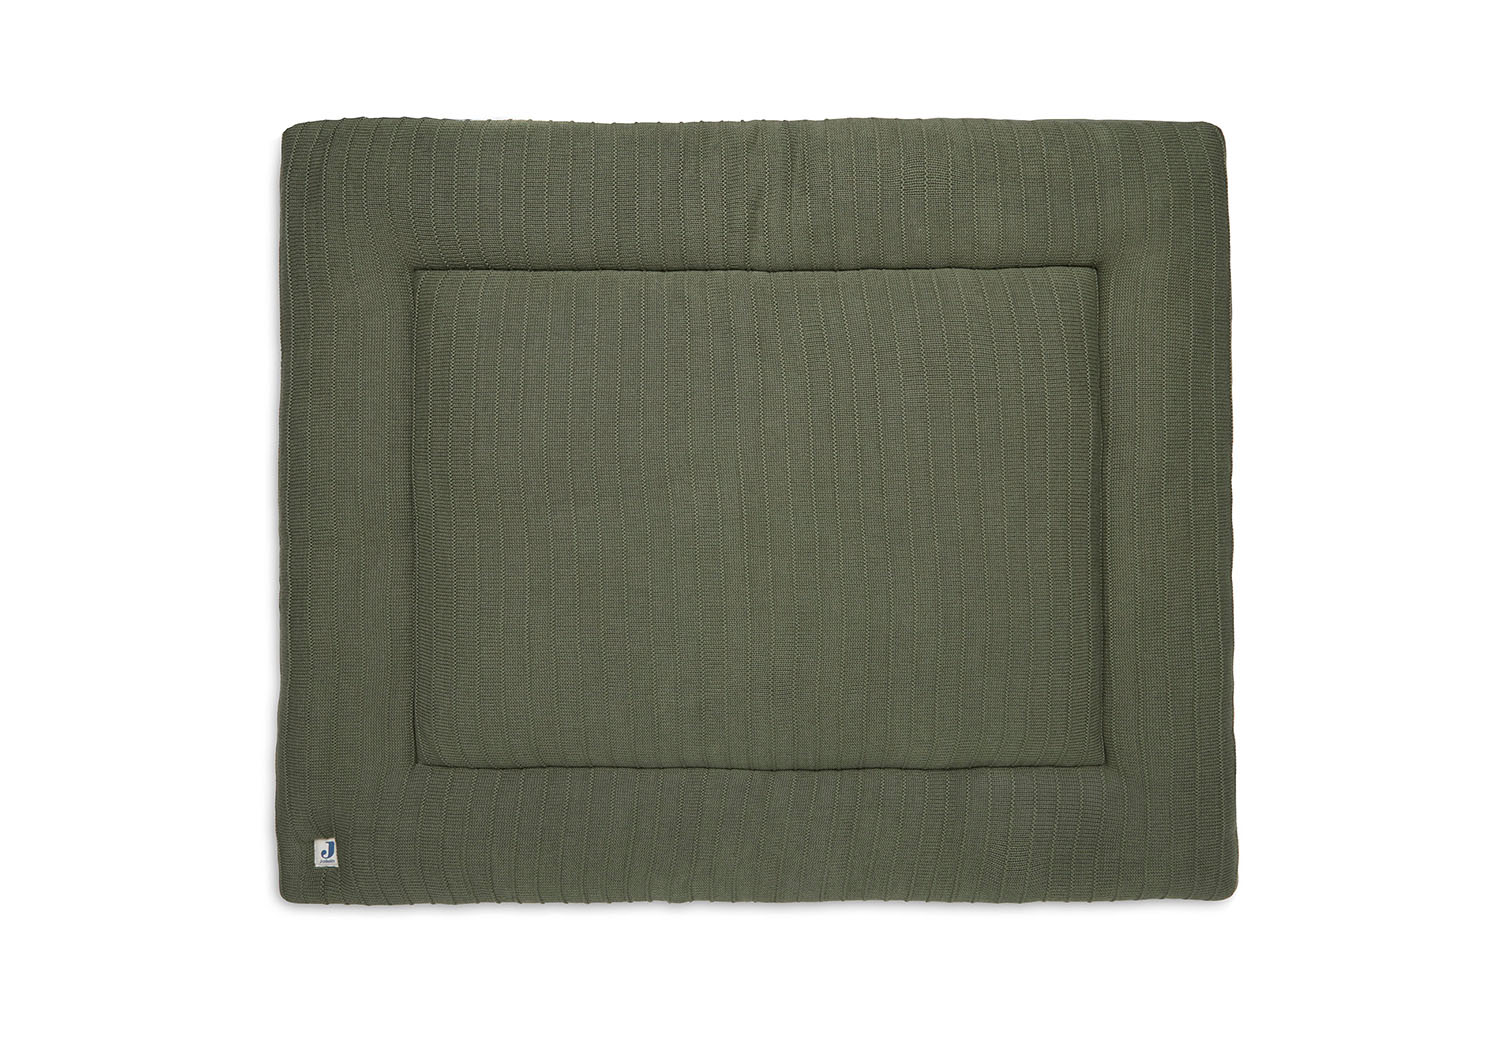 Laufgittereinlage Krabbeldecke Pure Knit grün (75x95 cm)